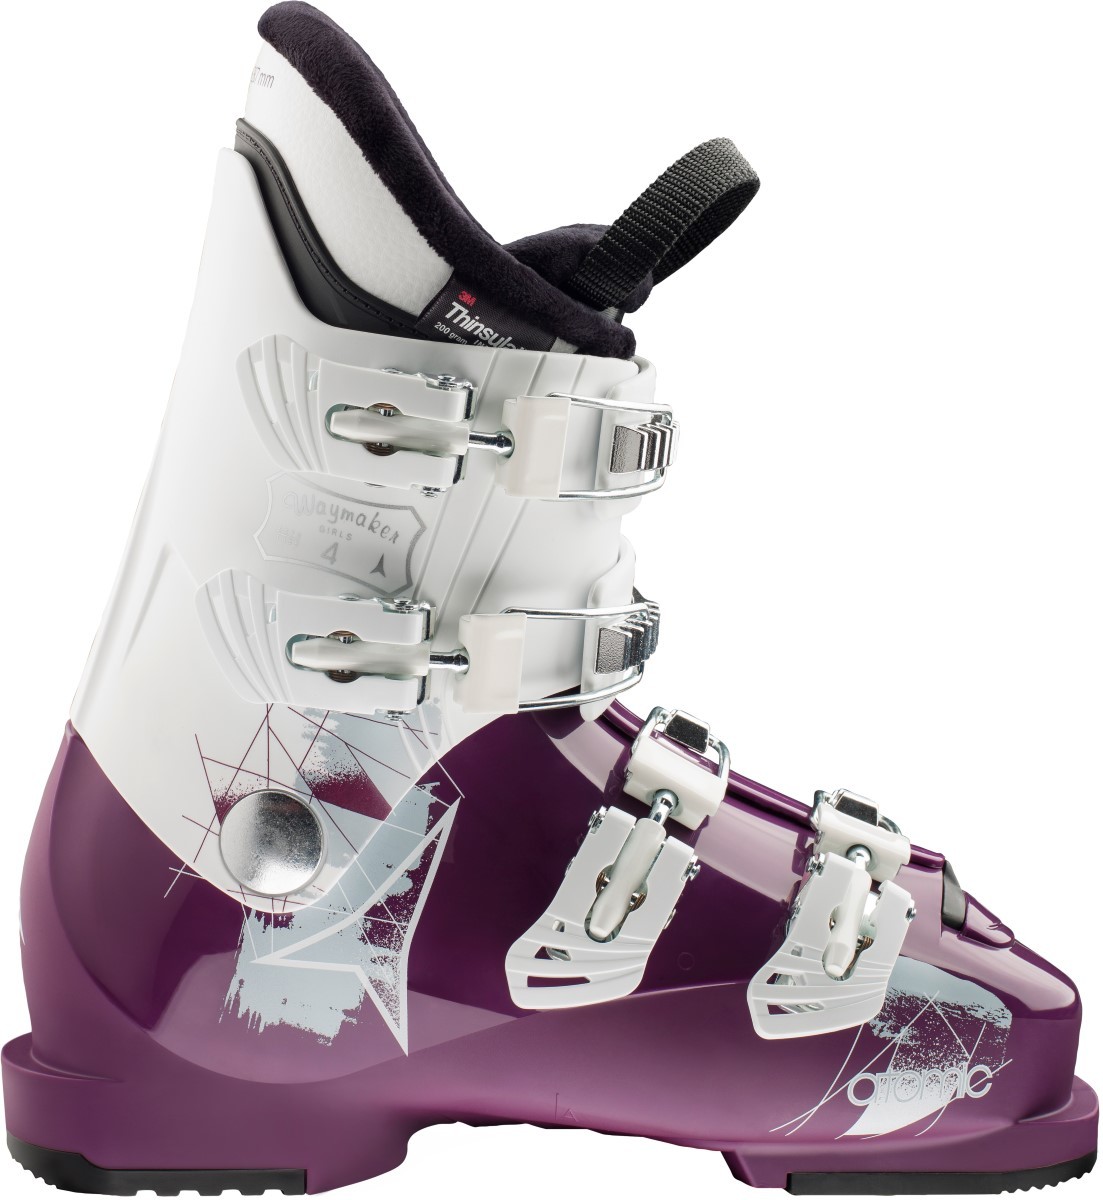 fluweel park Kast Kinder skischoenen kopen bij Duijvestein Winterstore